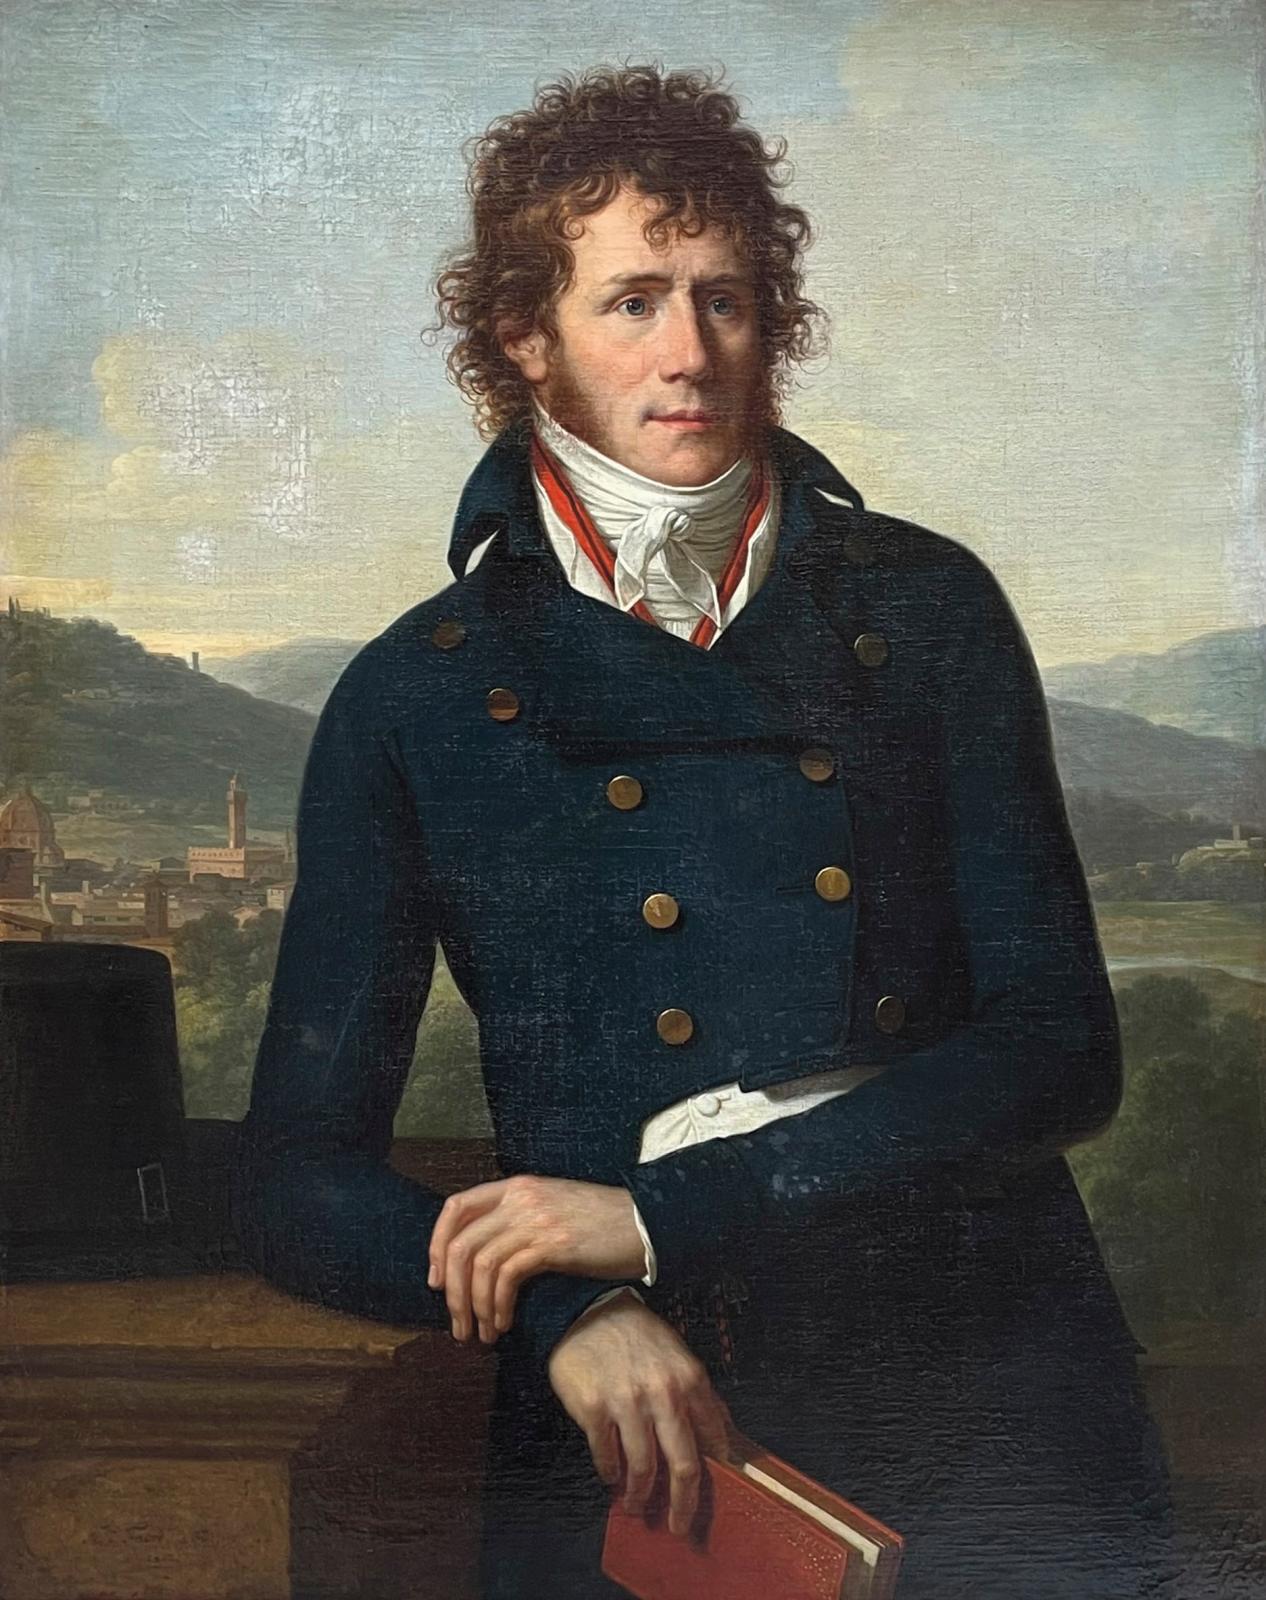 Un portrait diplomatique signé François-Xavier Fabre